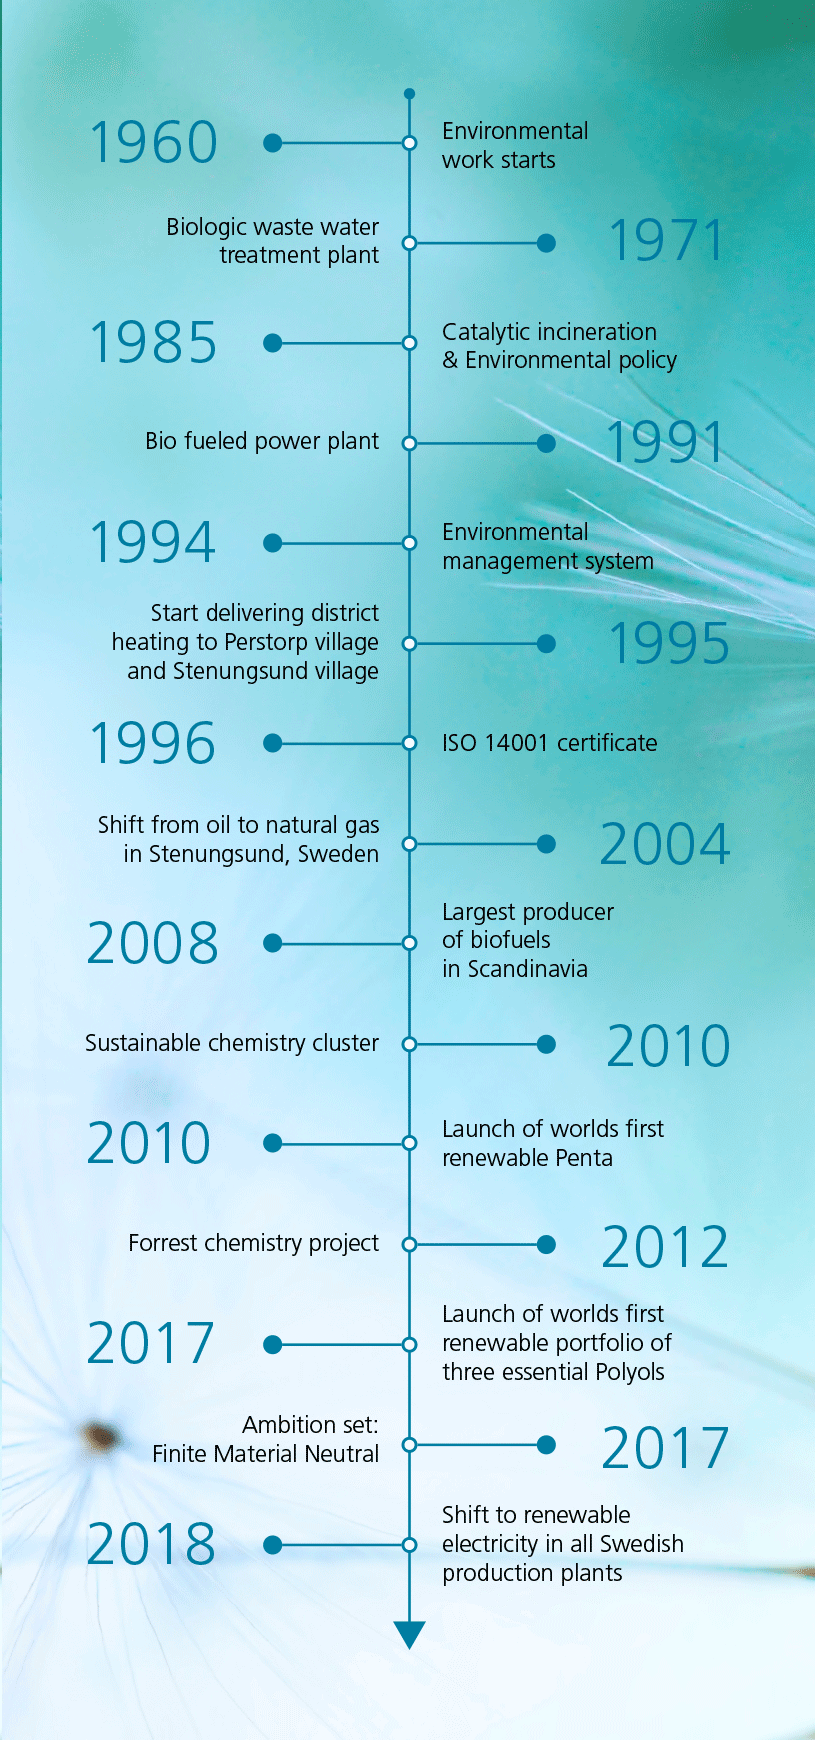 Sustainability timeline